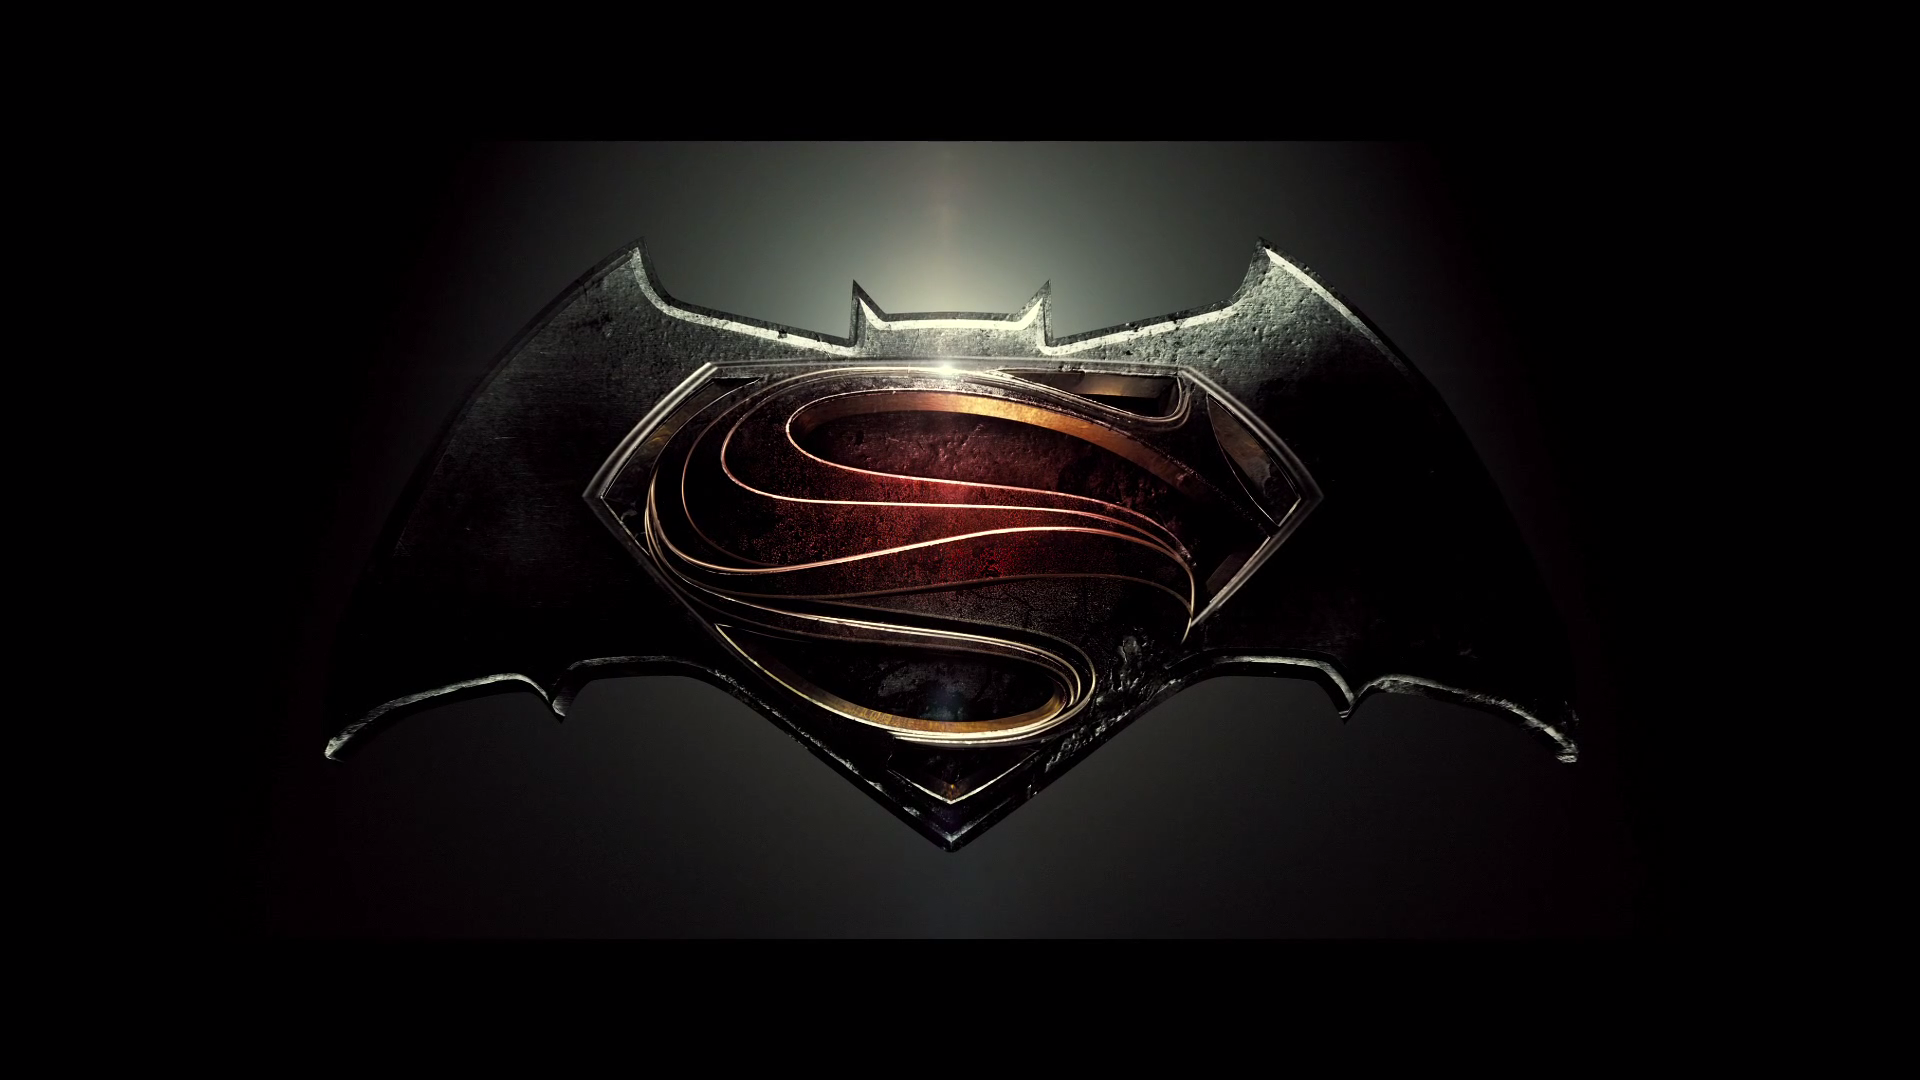 for mac download Batman v Superman: Dawn of Justice